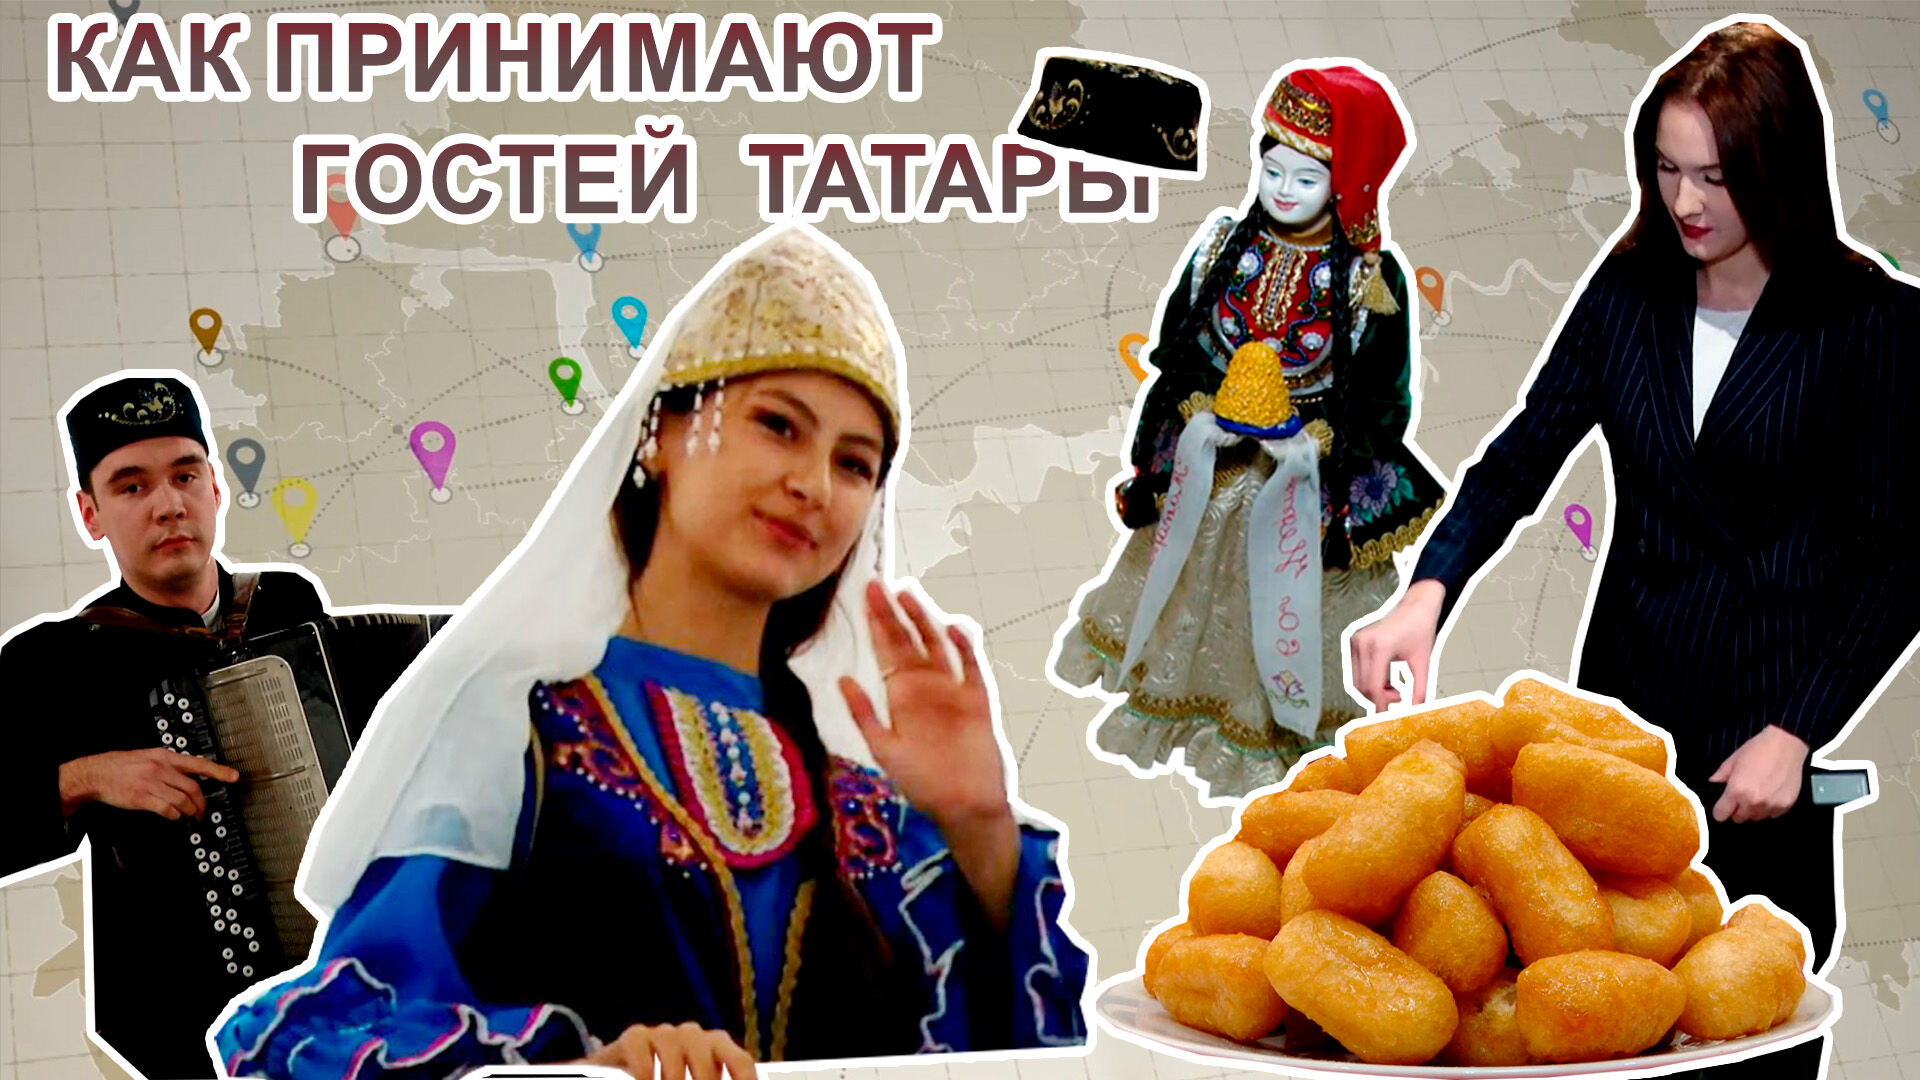 Почему тюбетейка – это оберег, и как принимают гостей татары: молодежь Альметьевска сохраняет традиции предков&nbsp;